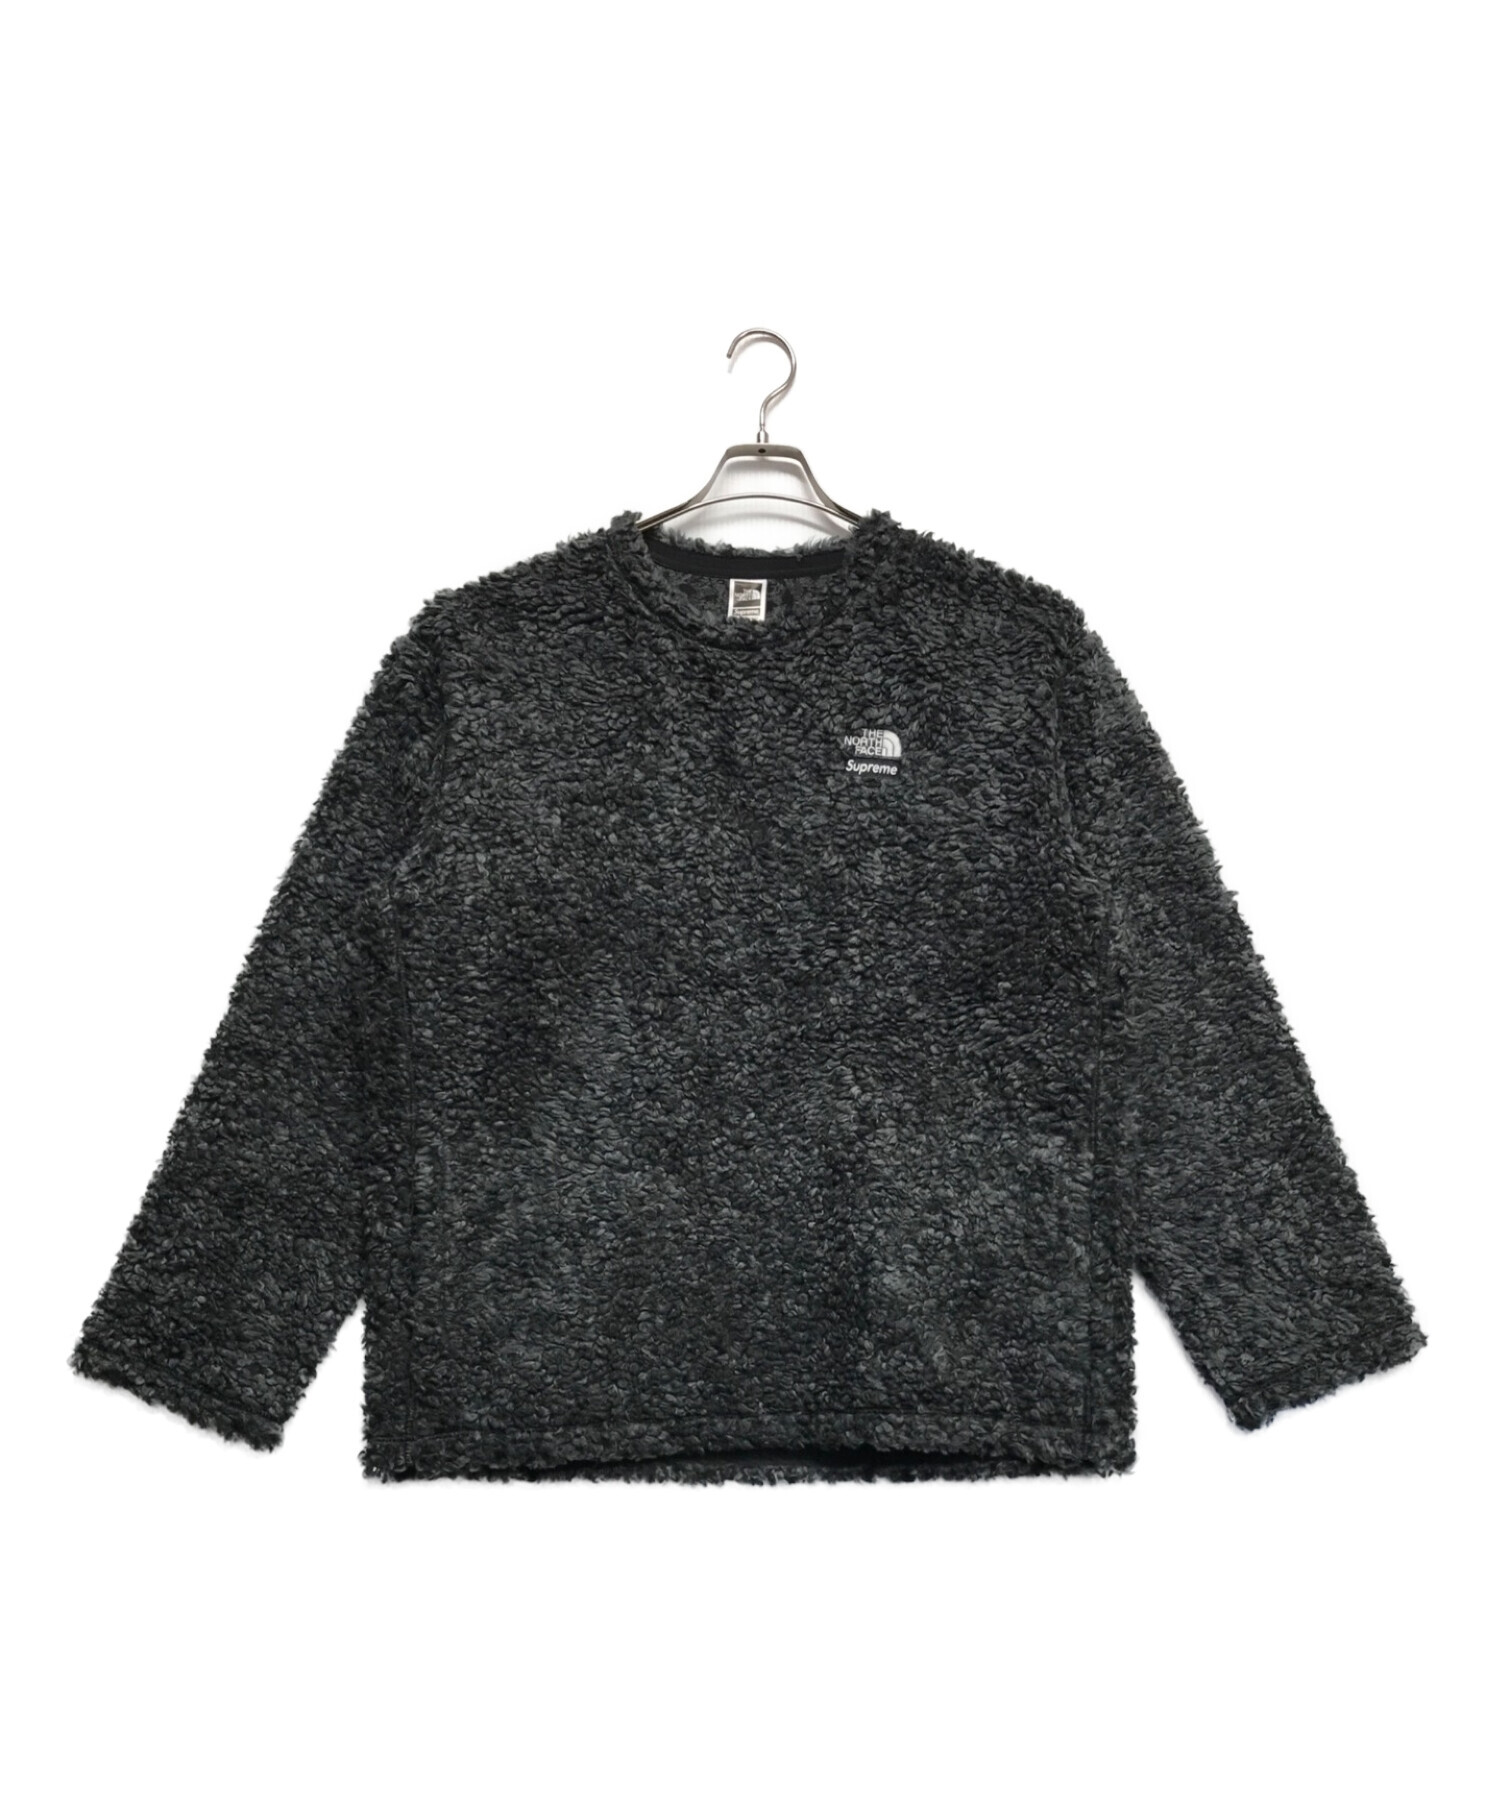 Supreme 14aw fleece pullover